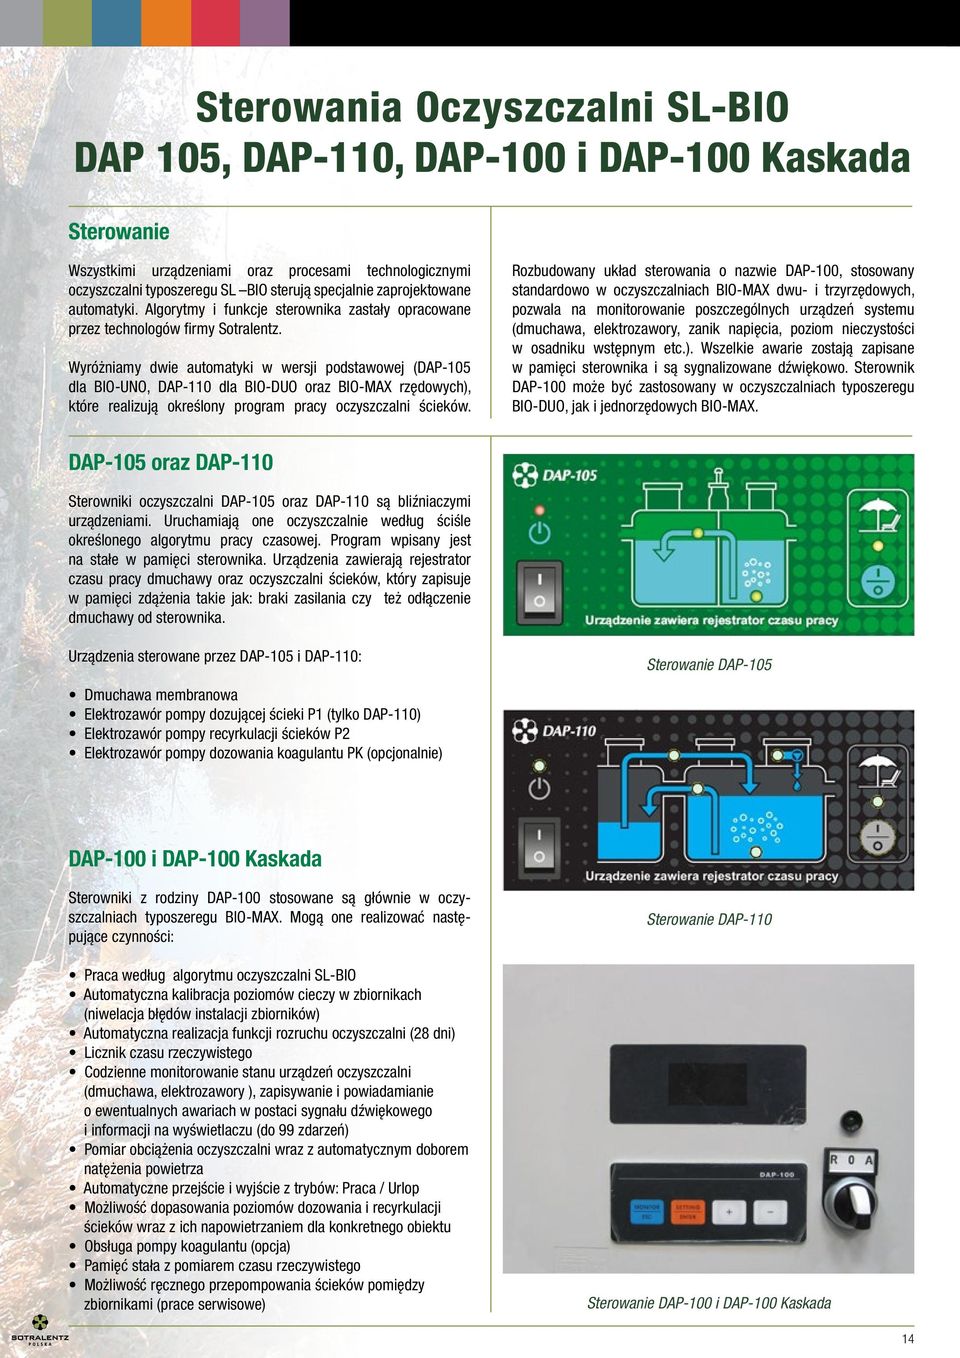 Wyróżniamy dwie automatyki w wersji podstawowej (DAP-105 dla BIO-UNO, DAP-110 dla BIO-DUO oraz BIO-MAX rzędowych), które realizują określony program pracy oczyszczalni ścieków.